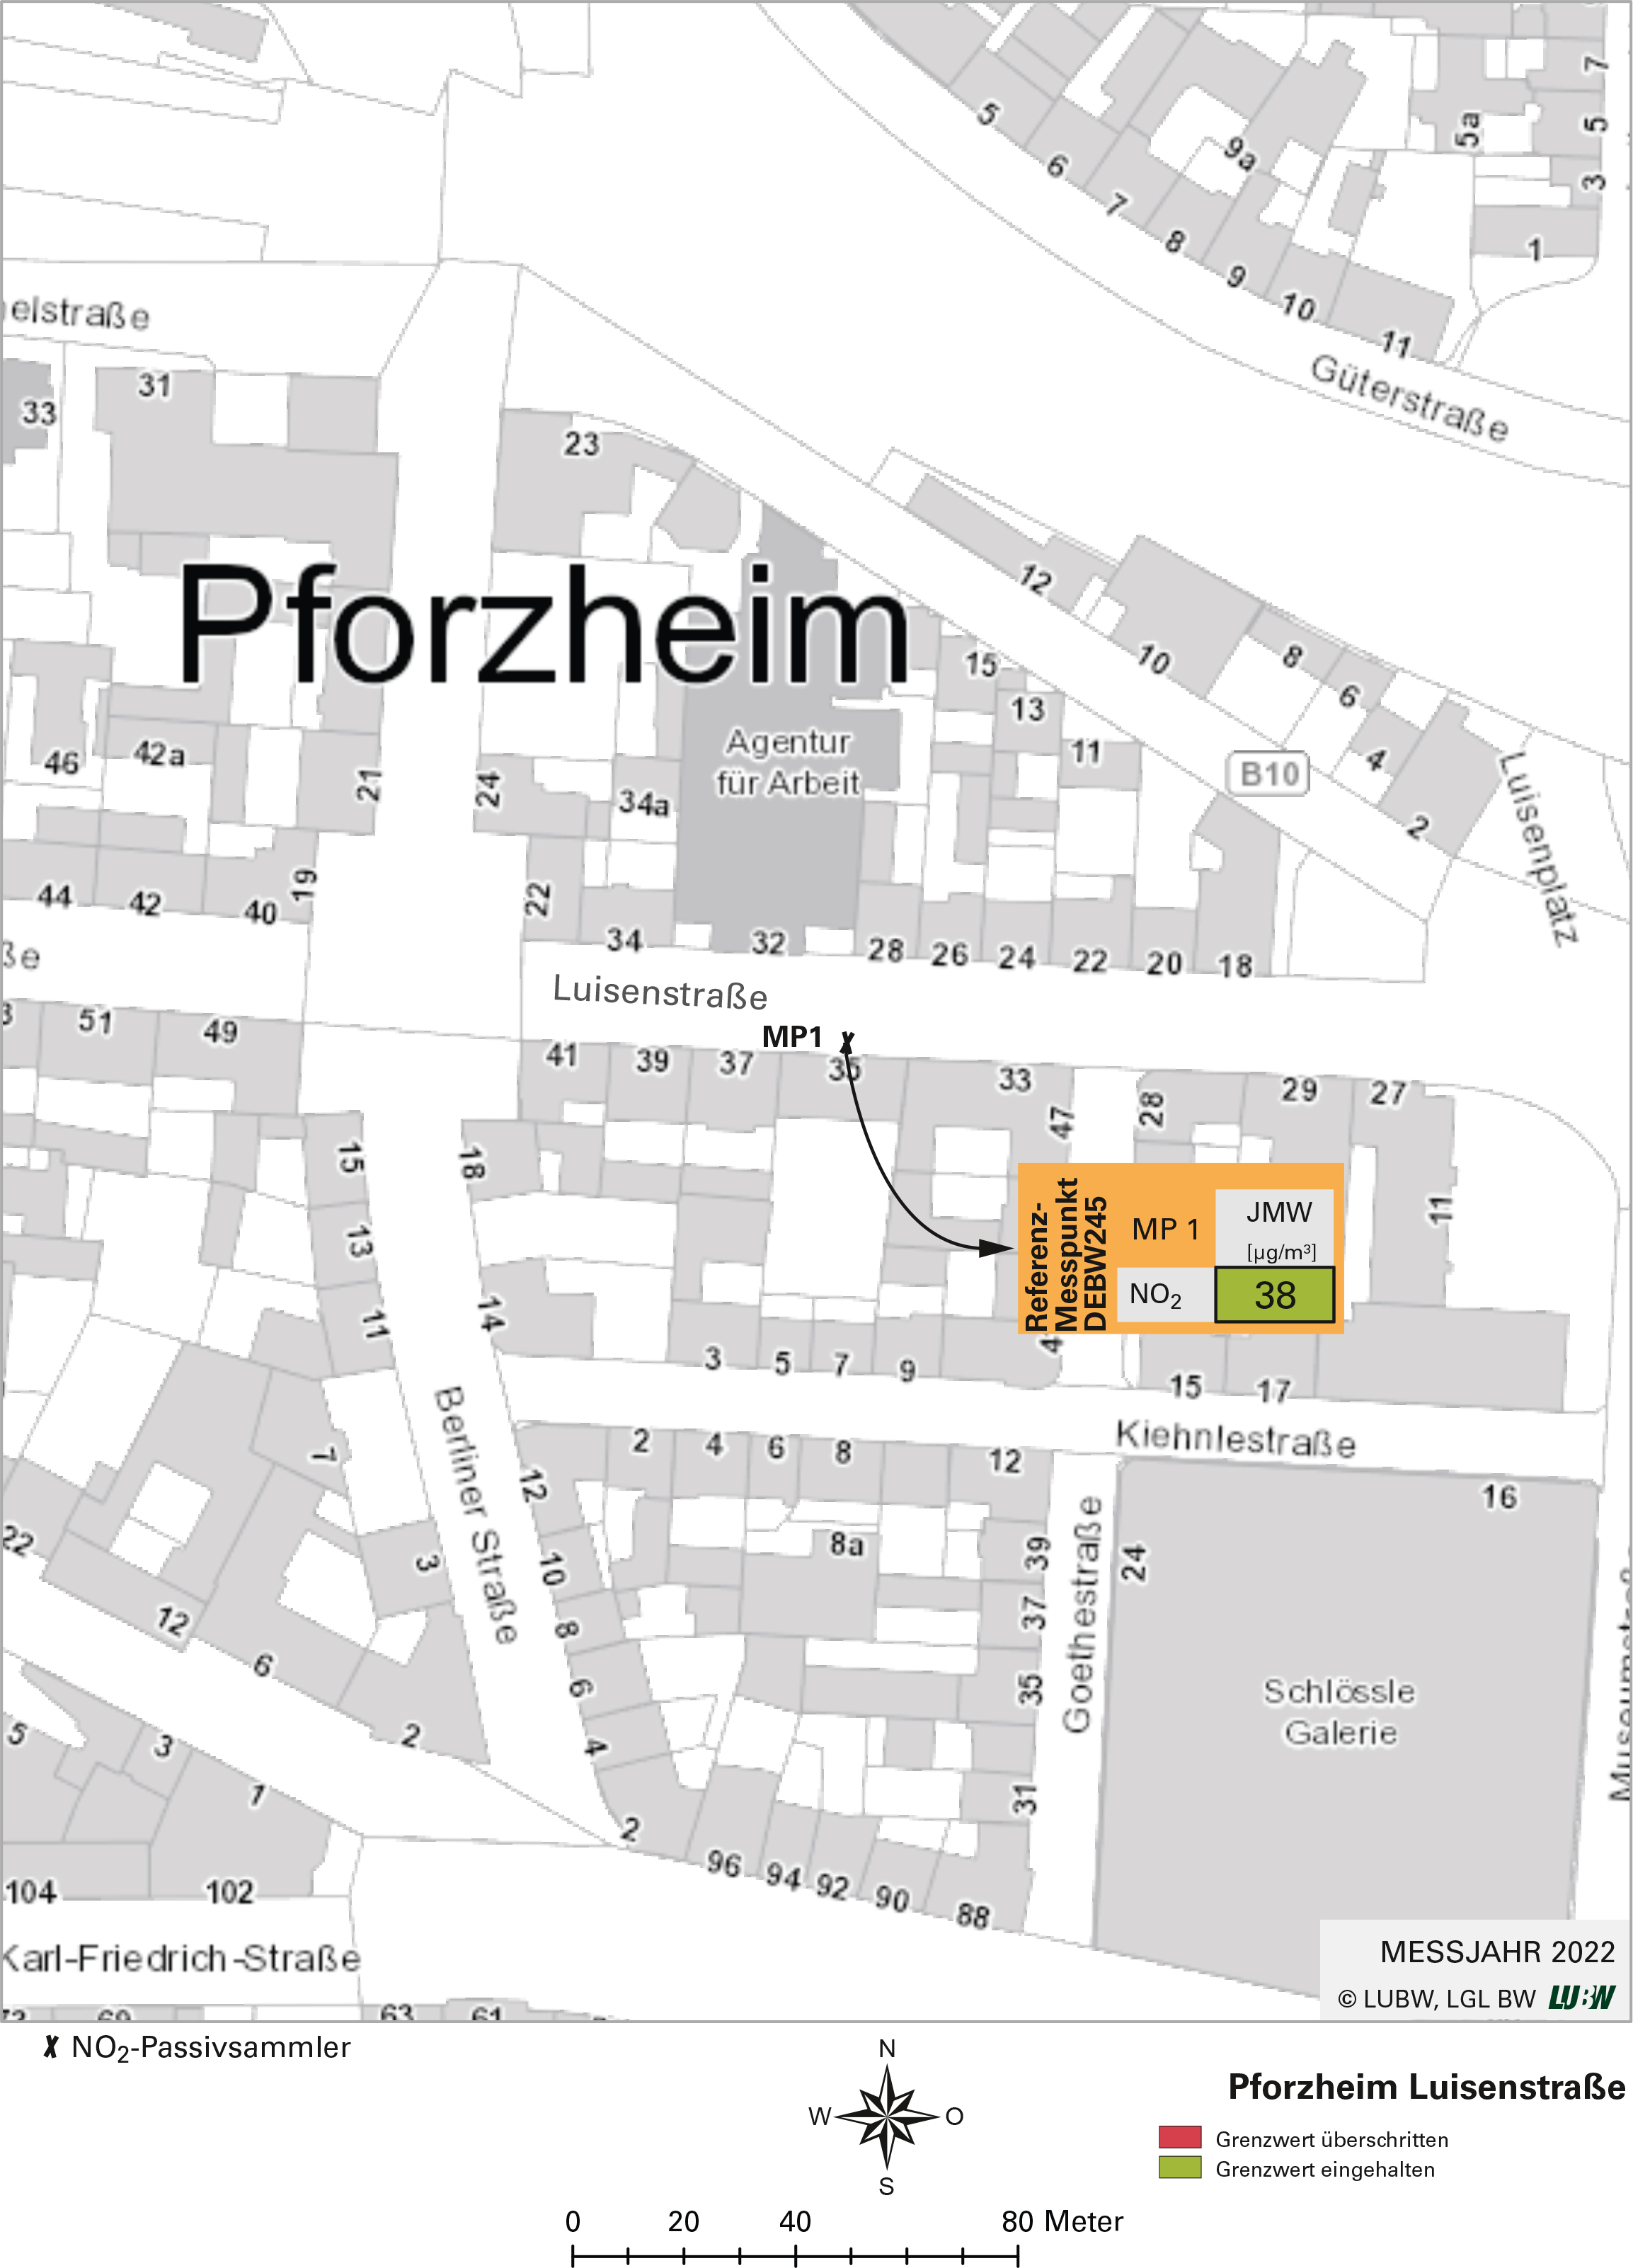 Kartenausschnitt, der die Lage der Messstelle Pforzheim Luisenstraße (Referenzmesspunkt) zeigt. Dargestellt ist zudem das Ergebnis (Jahresmittelwert 2022) der gemessenen Stickstoffdioxidbelastung.